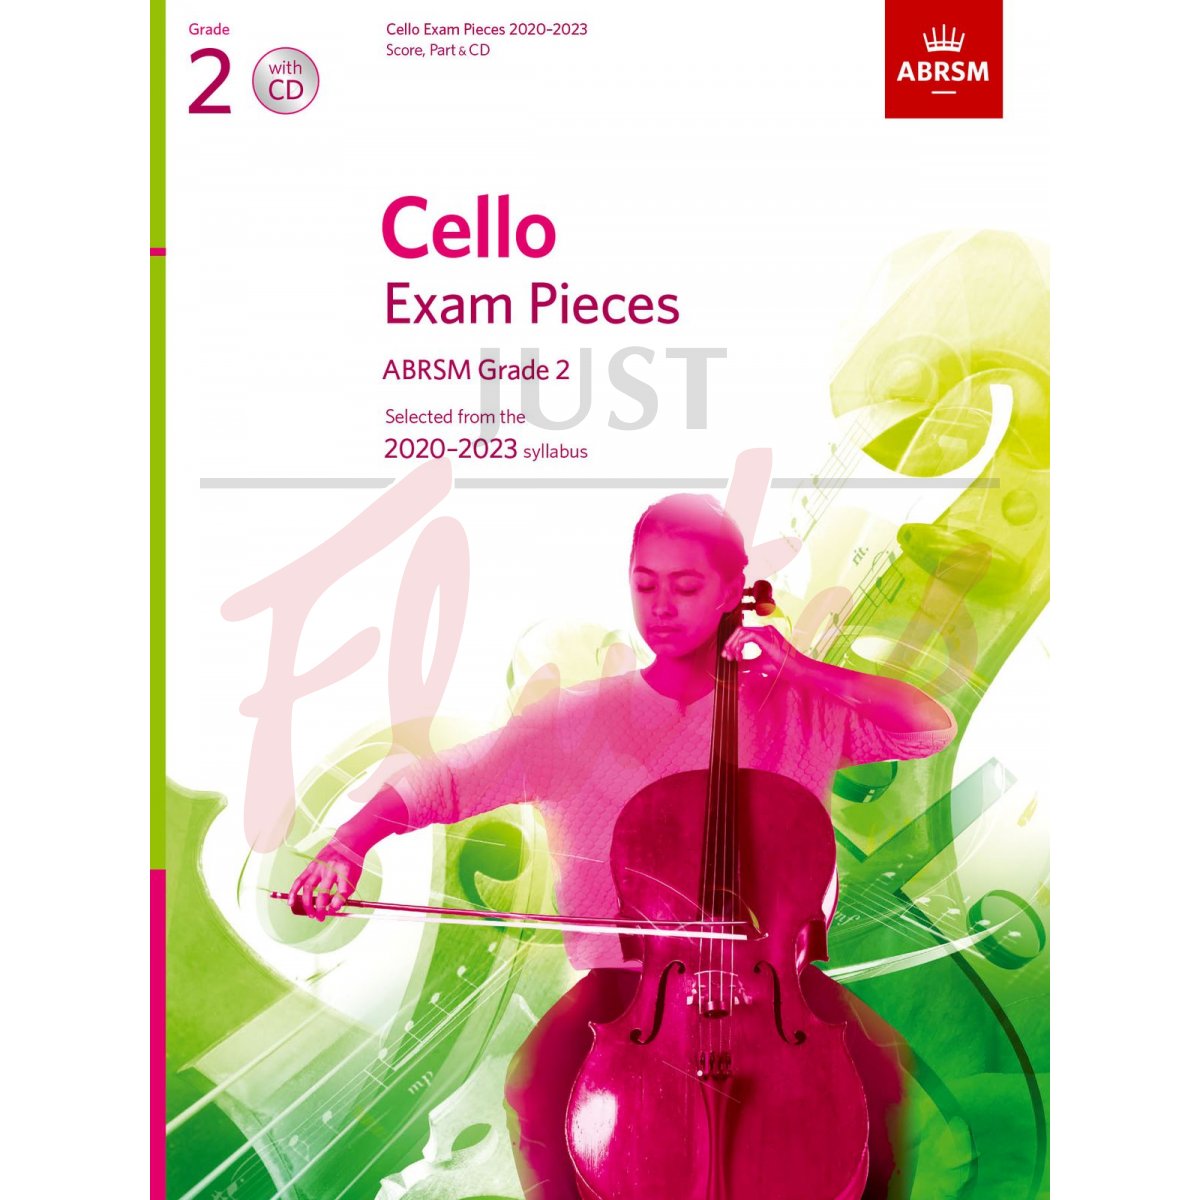 Cello Exam Pieces 2020-2023, Grade 2